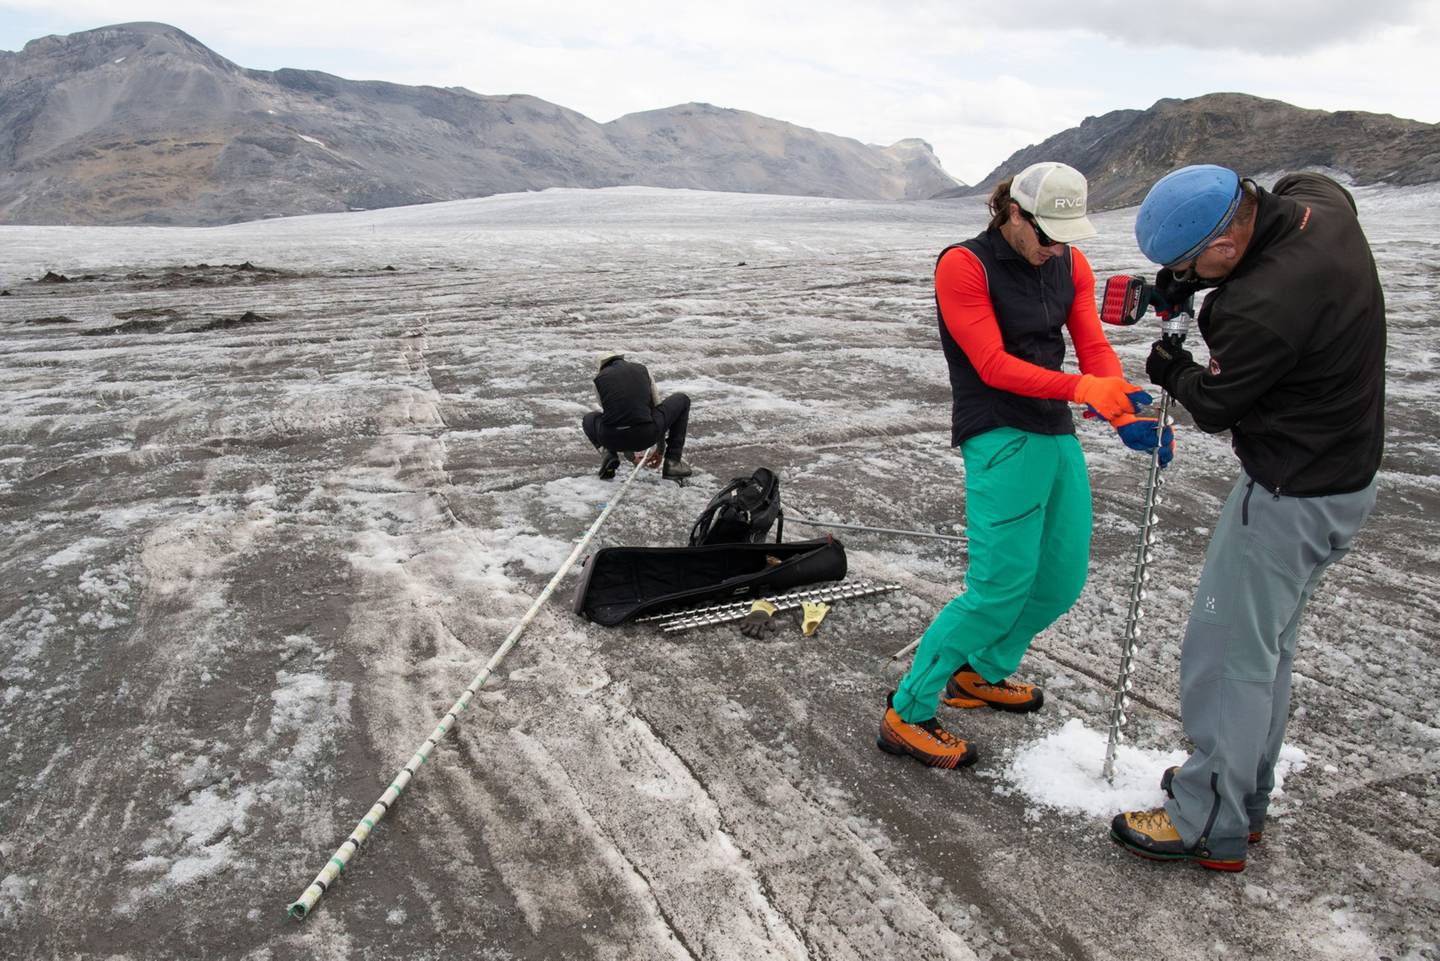 Matthias Huss, a la izquierda, mientras su colega introduce un taladro Kovacs en el hielo del glaciar Plaine Morte, el 30 de agosto. Fotógrafo: Jeff&nbsp;Black/Bloombergdfd